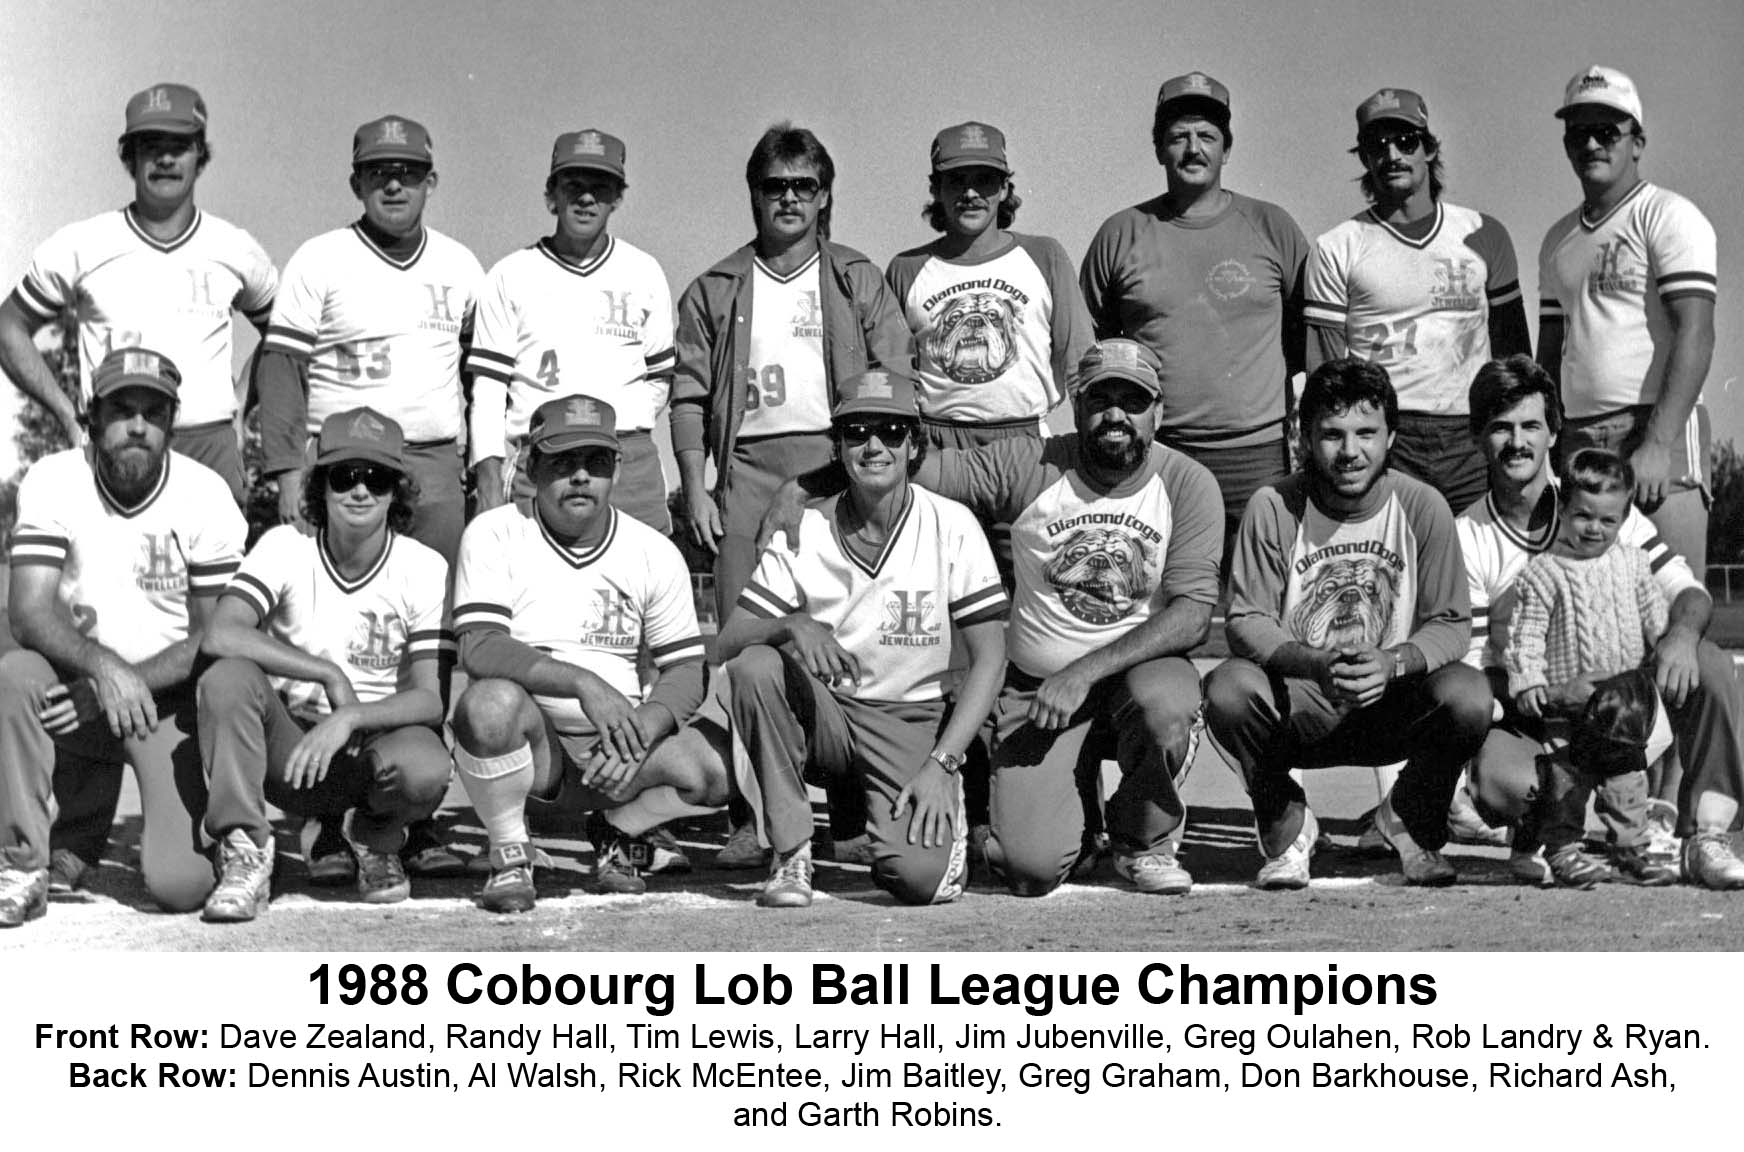 29JJ-1988 Cobourg Lob Ball League -Champs -Halls Diamond Dogs